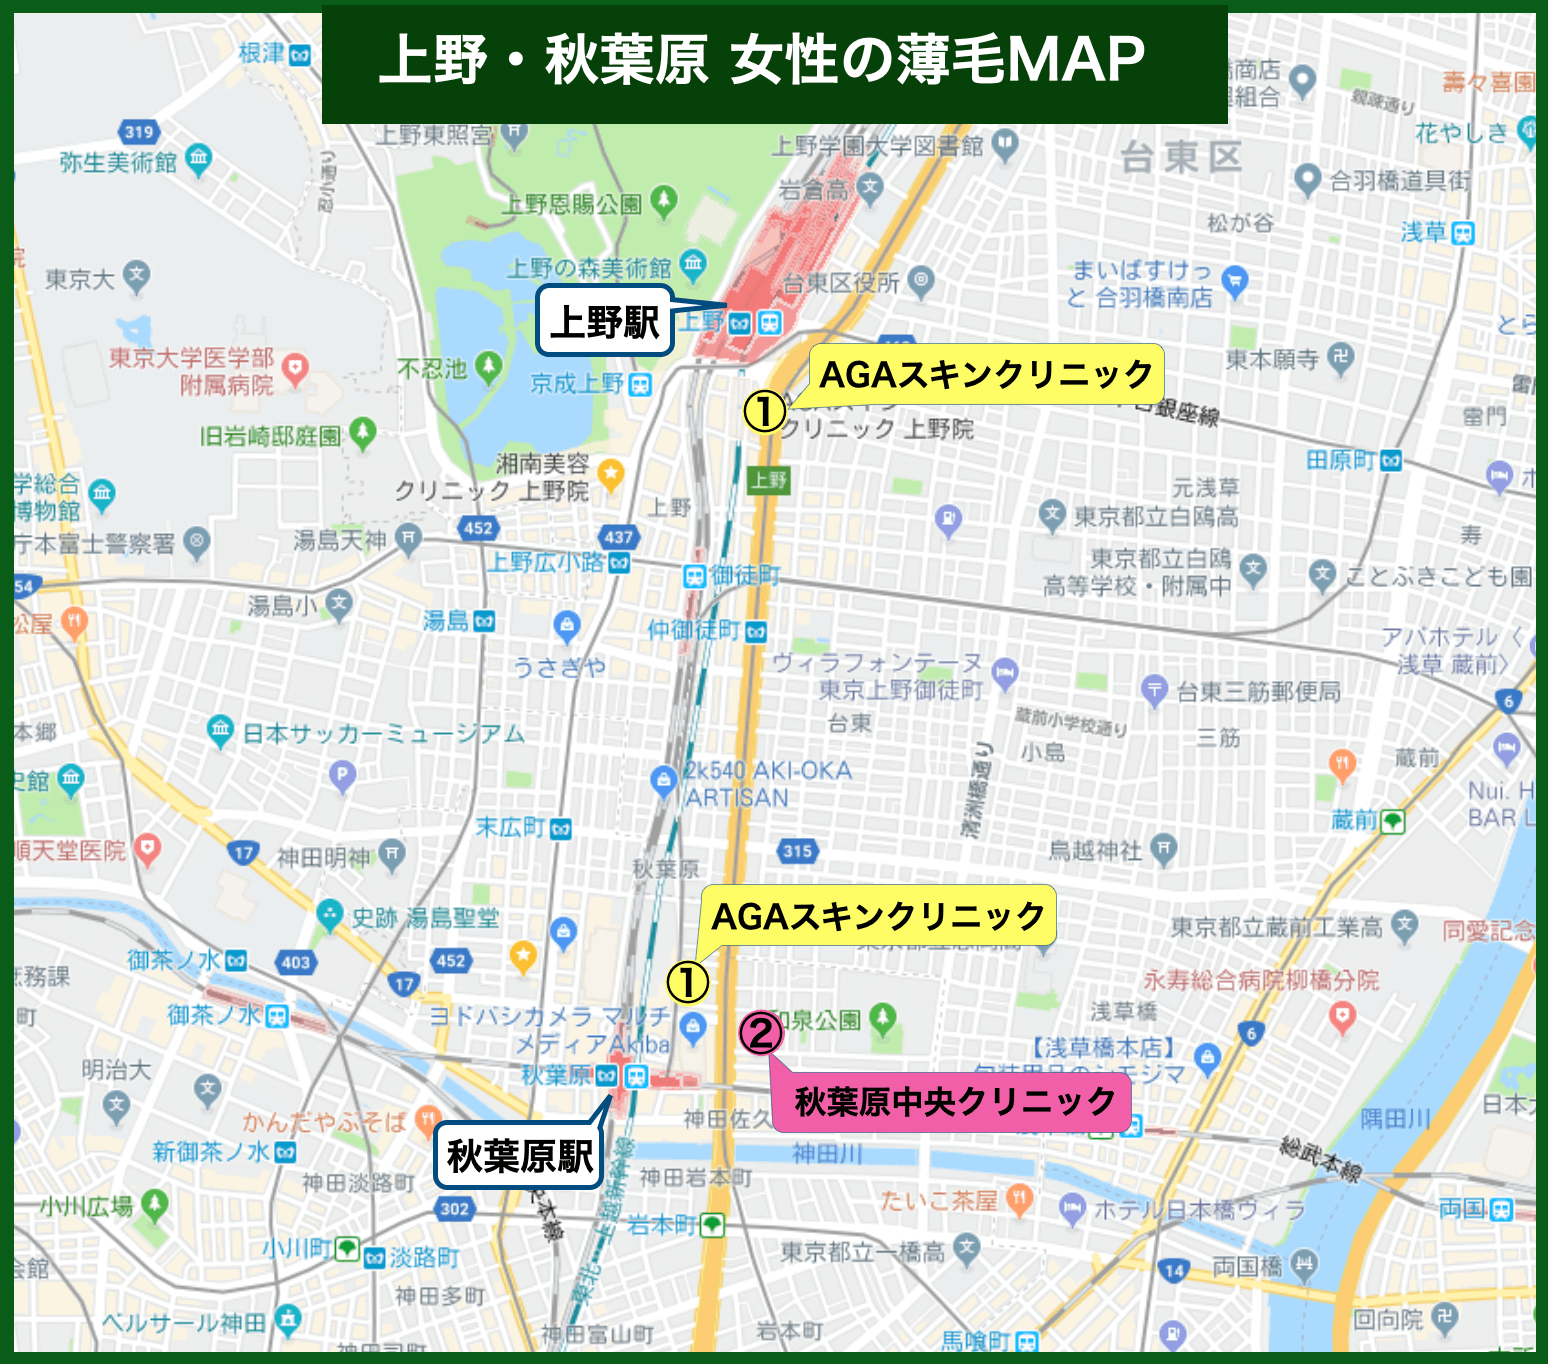 上野・秋葉原女性の薄毛MAP